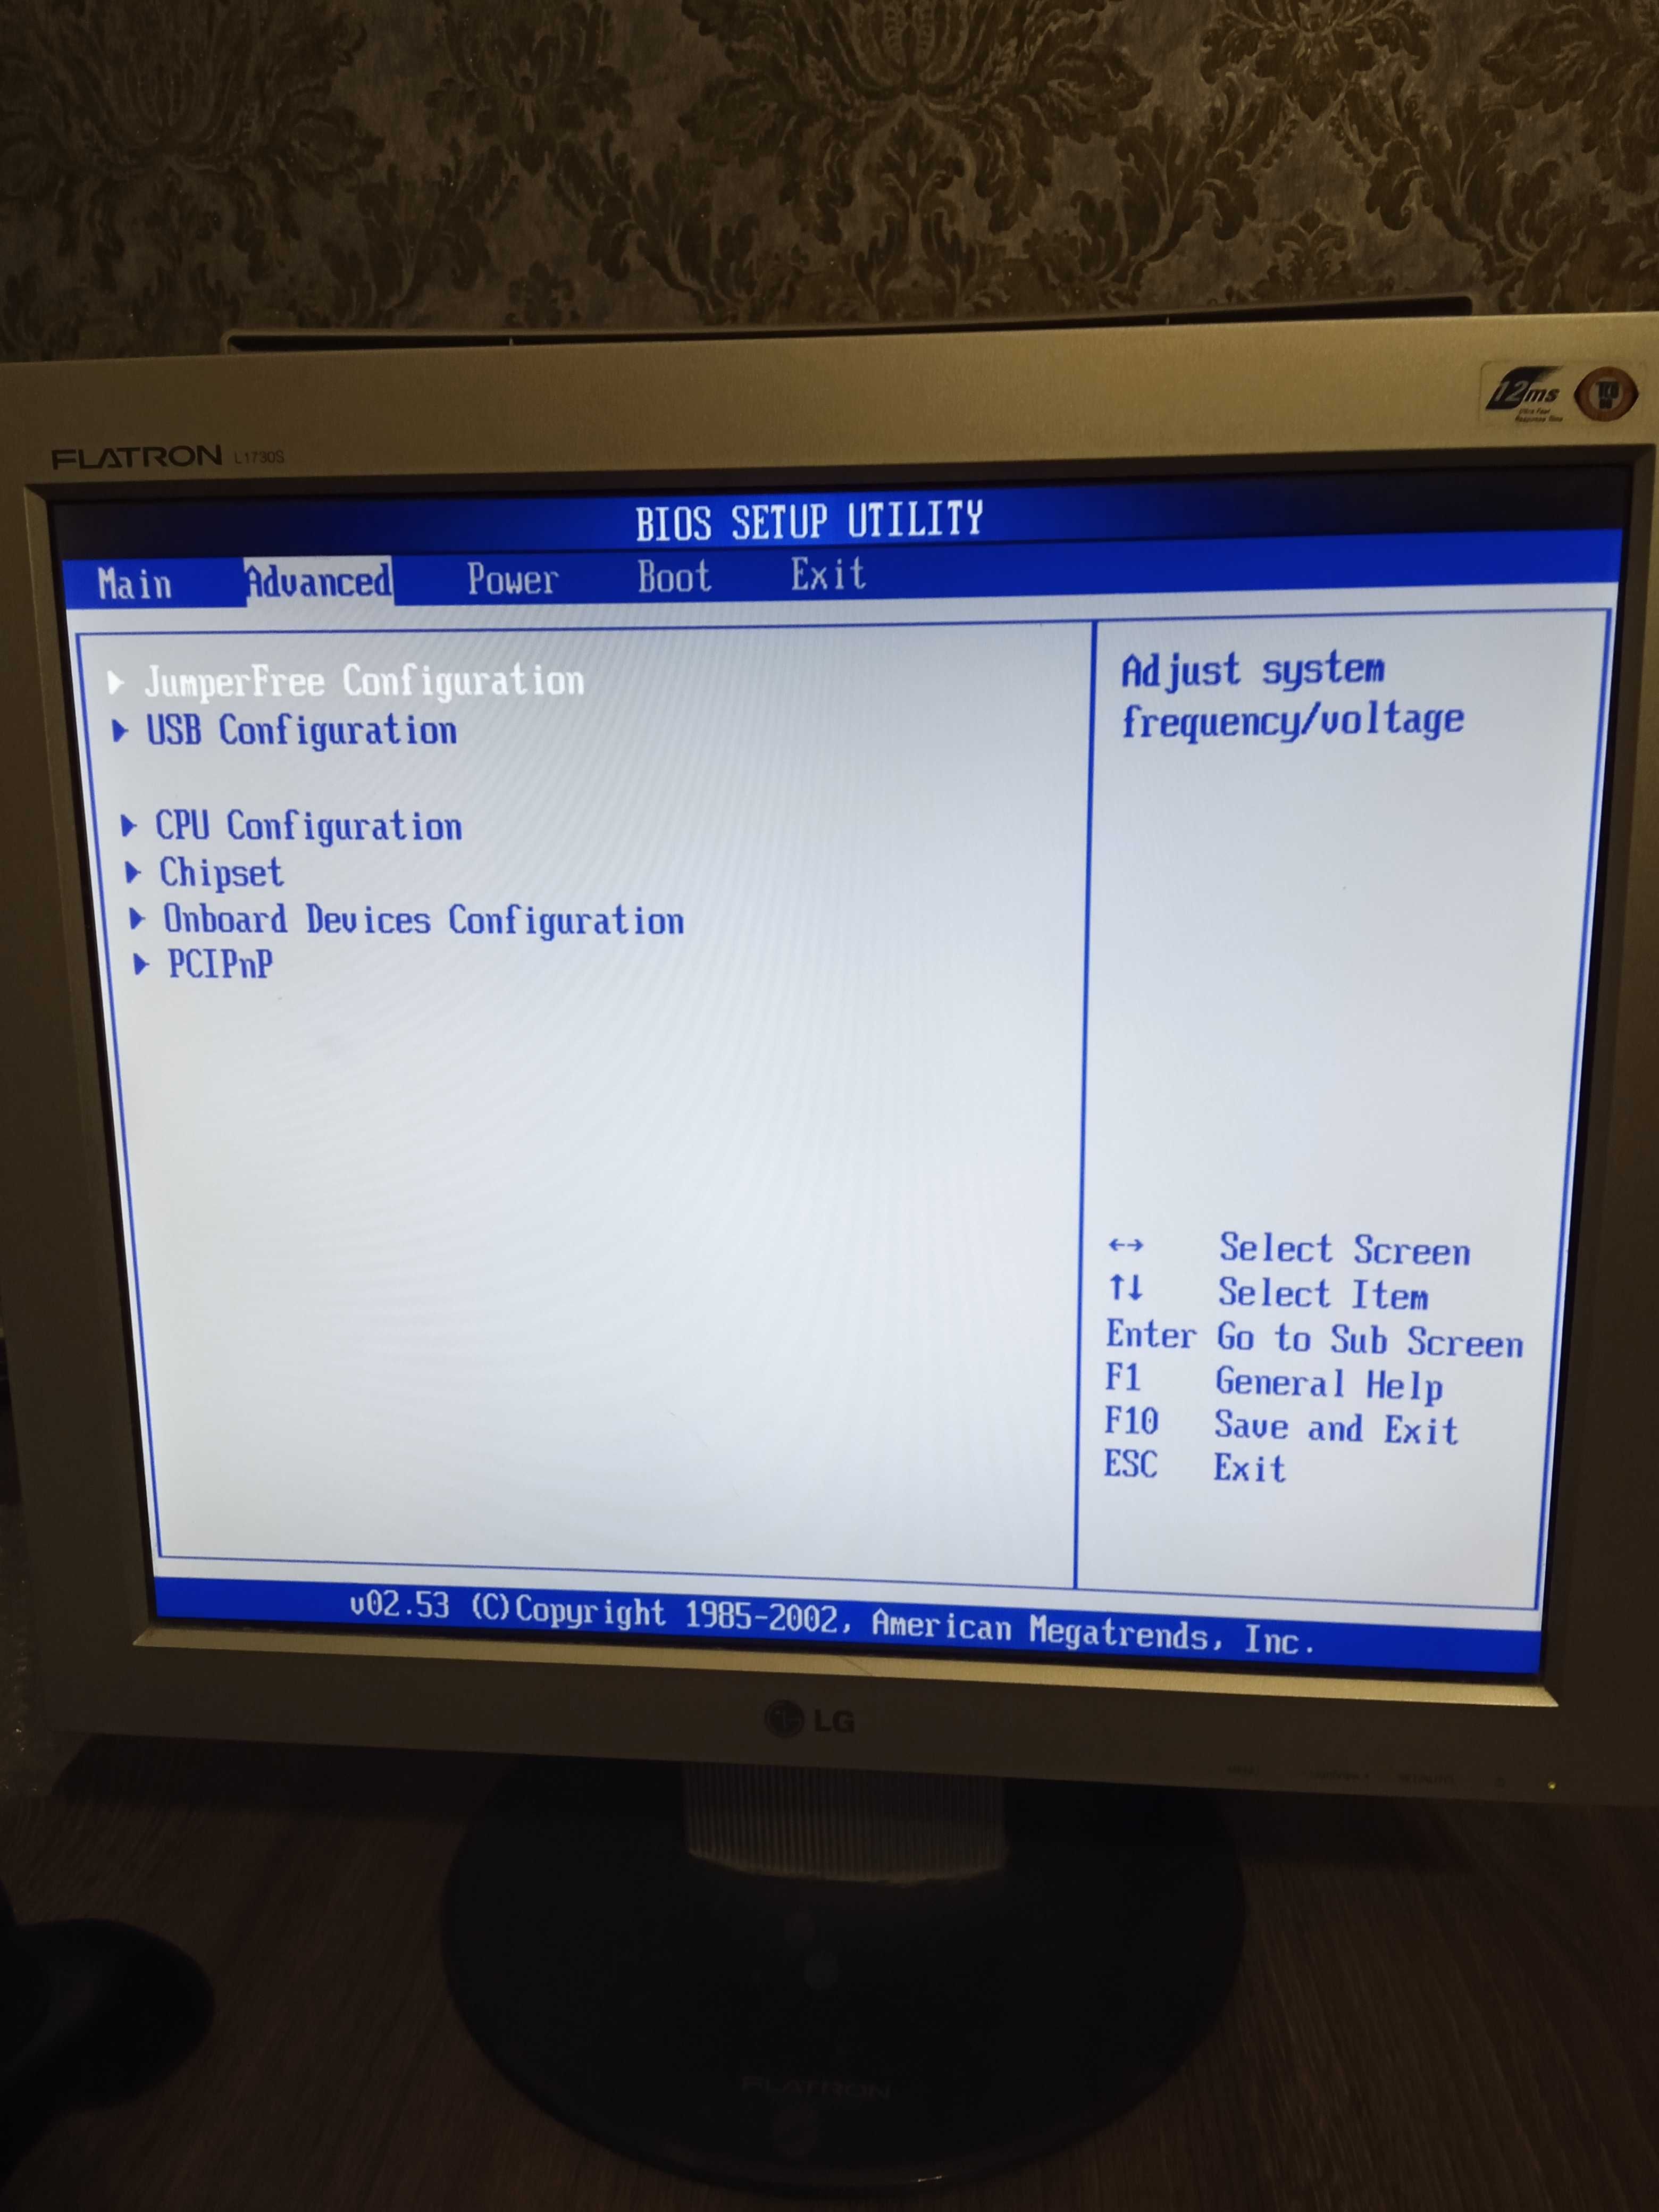 Продам материнскую плату Asus P5PL2+Процесор Pentium 4. 3.6gh